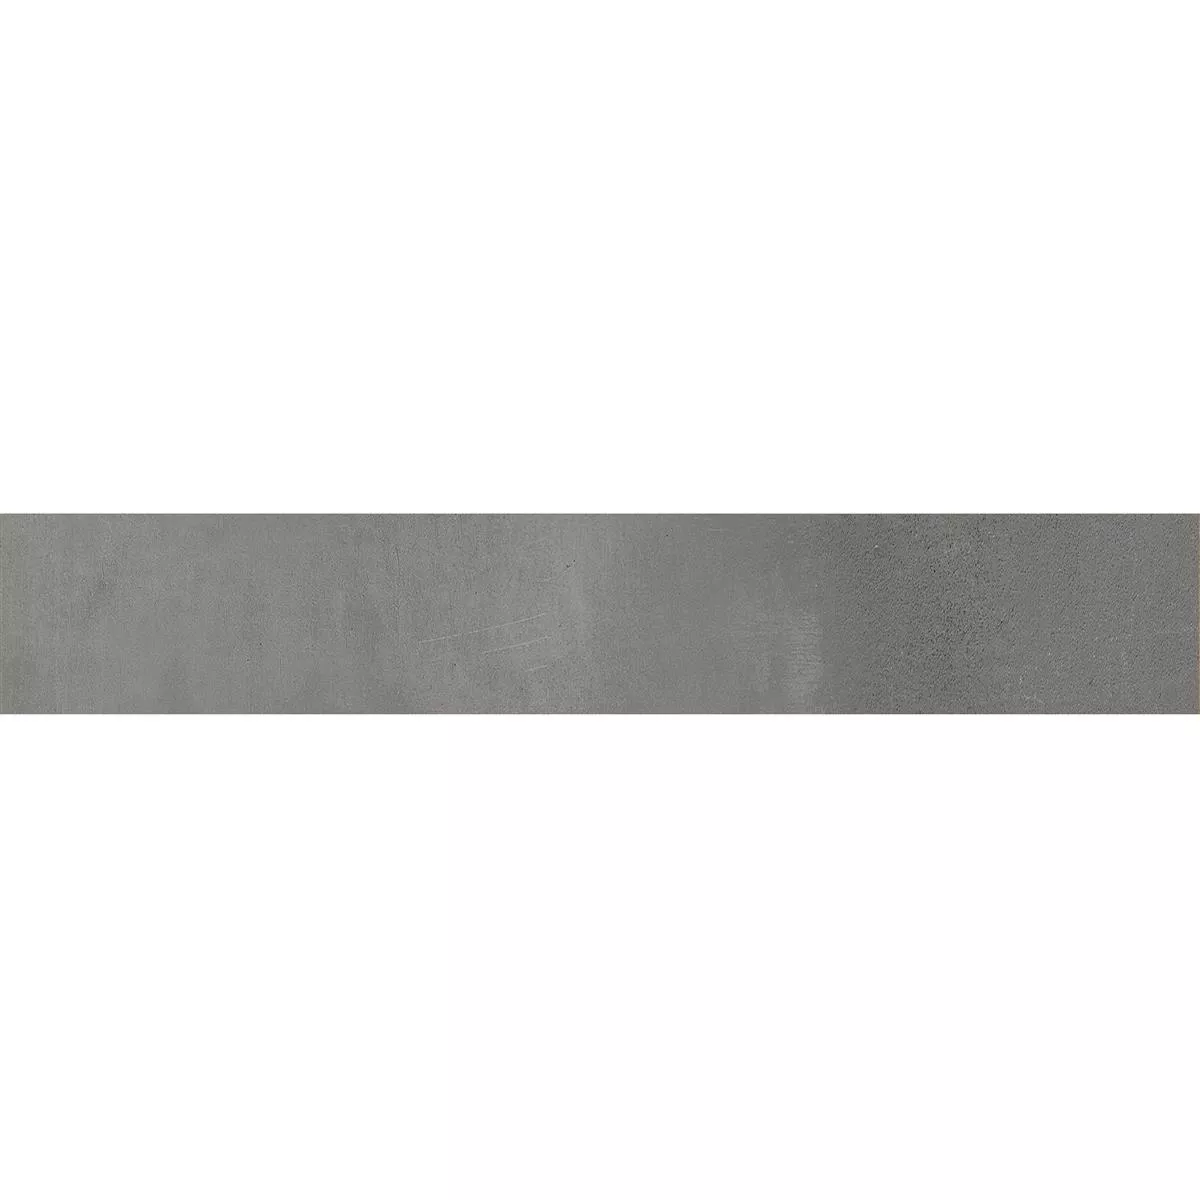 Σοβατεπί Brazil Σκούρο Γκρι 6,5x60cm